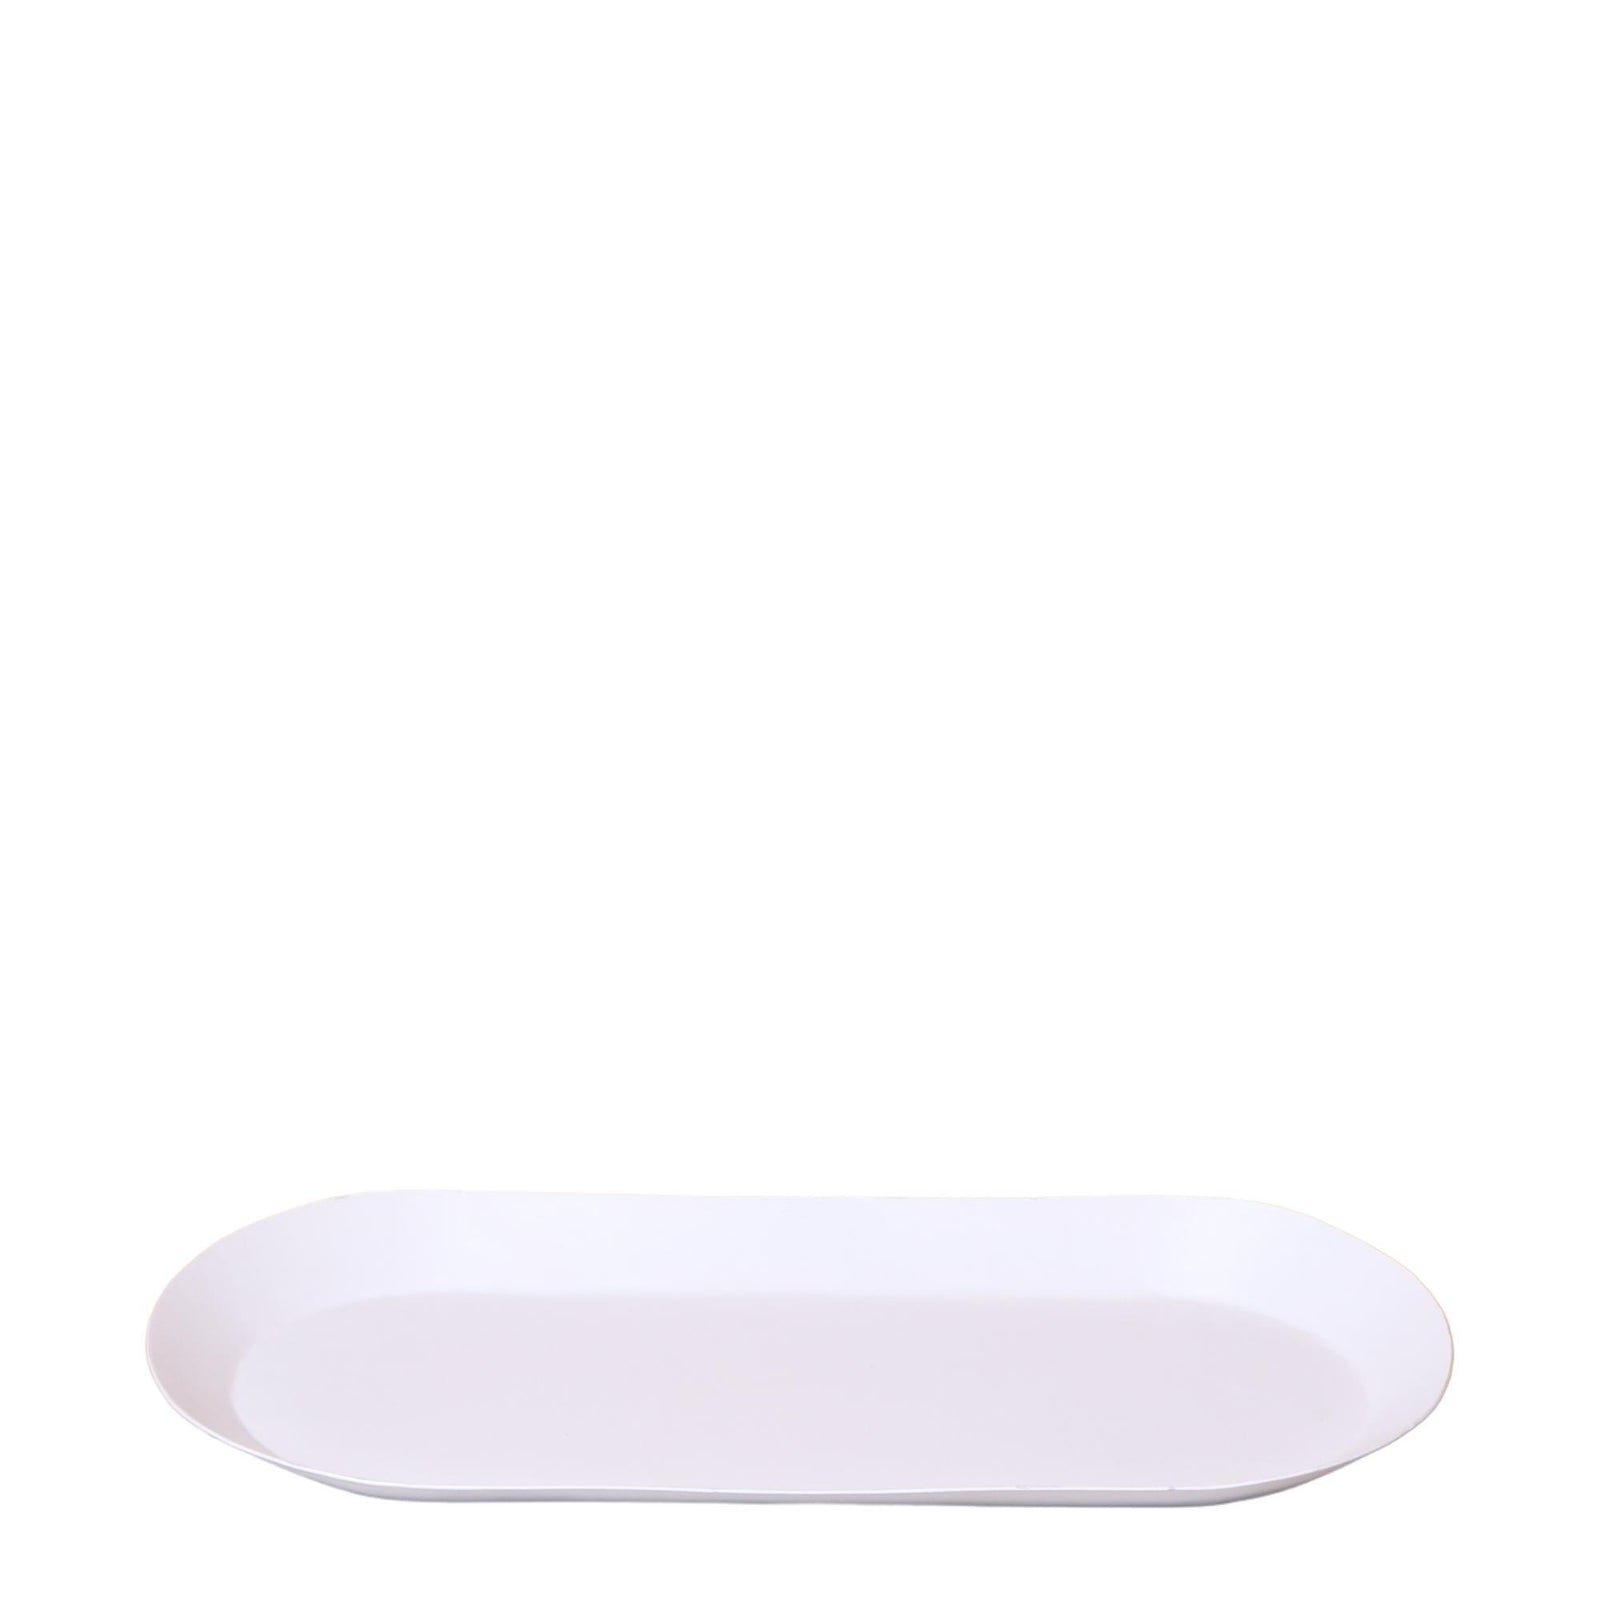 Kolibri Home | Plate oval -  Witte ovale dienblad Ø30cm